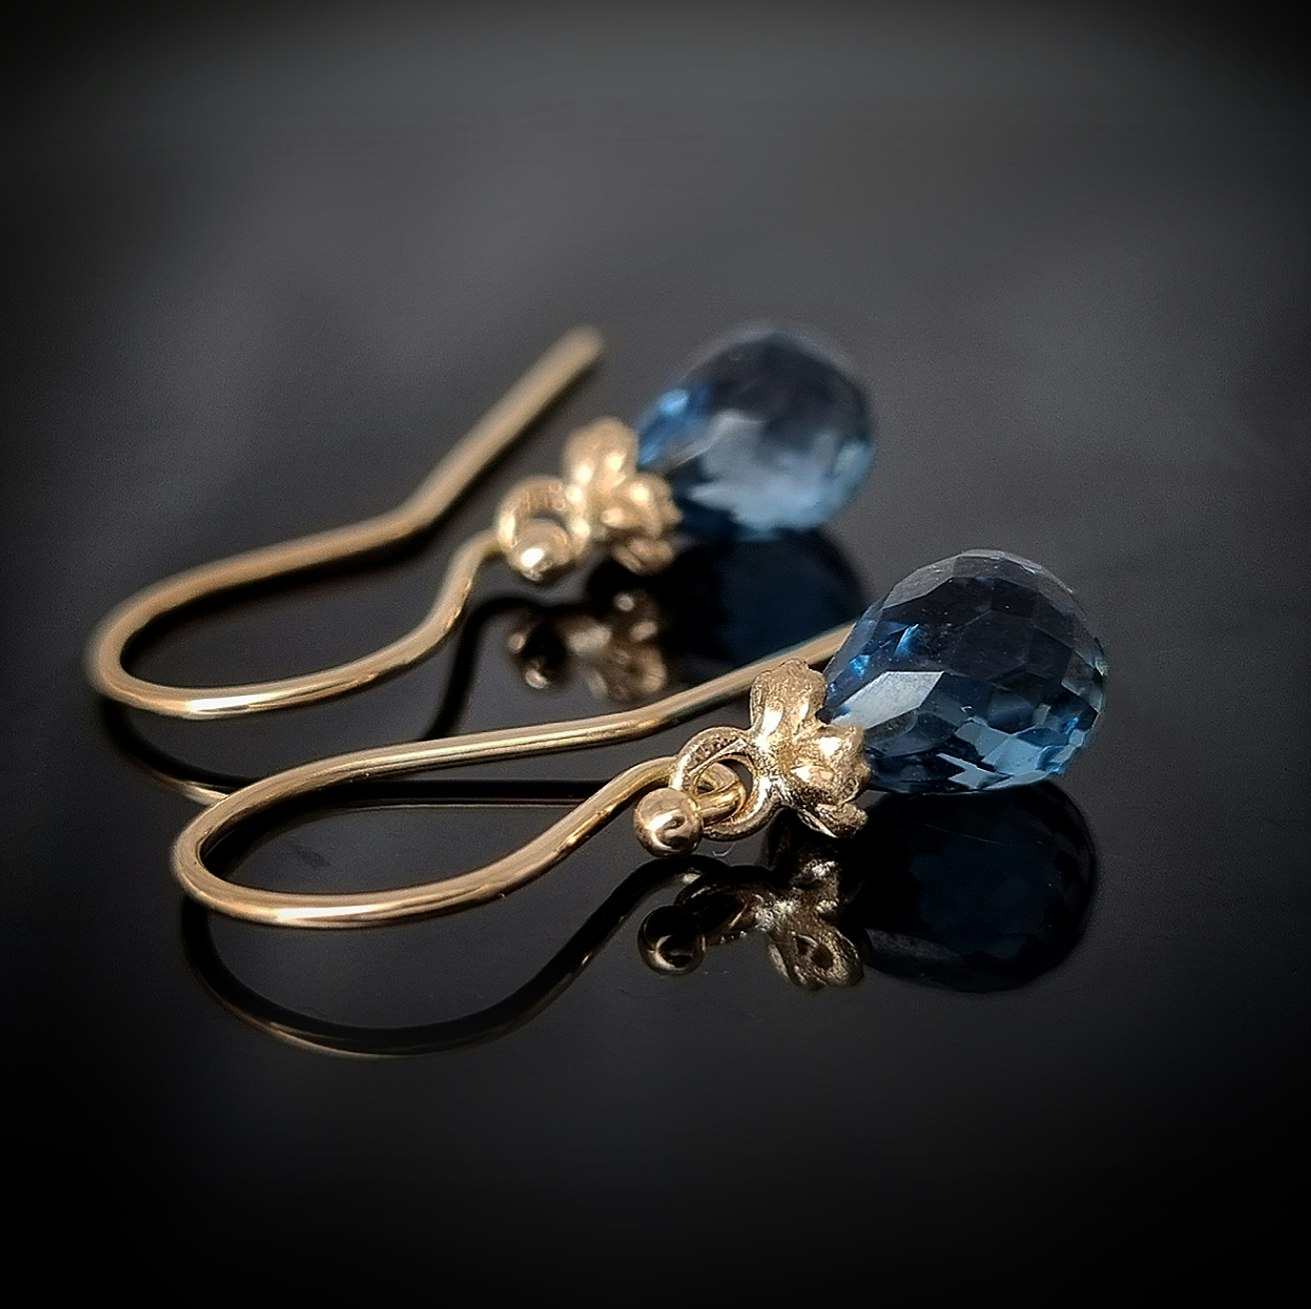 London blå Topas med gullviva - örhängen i 18K - Eco Design Sweden